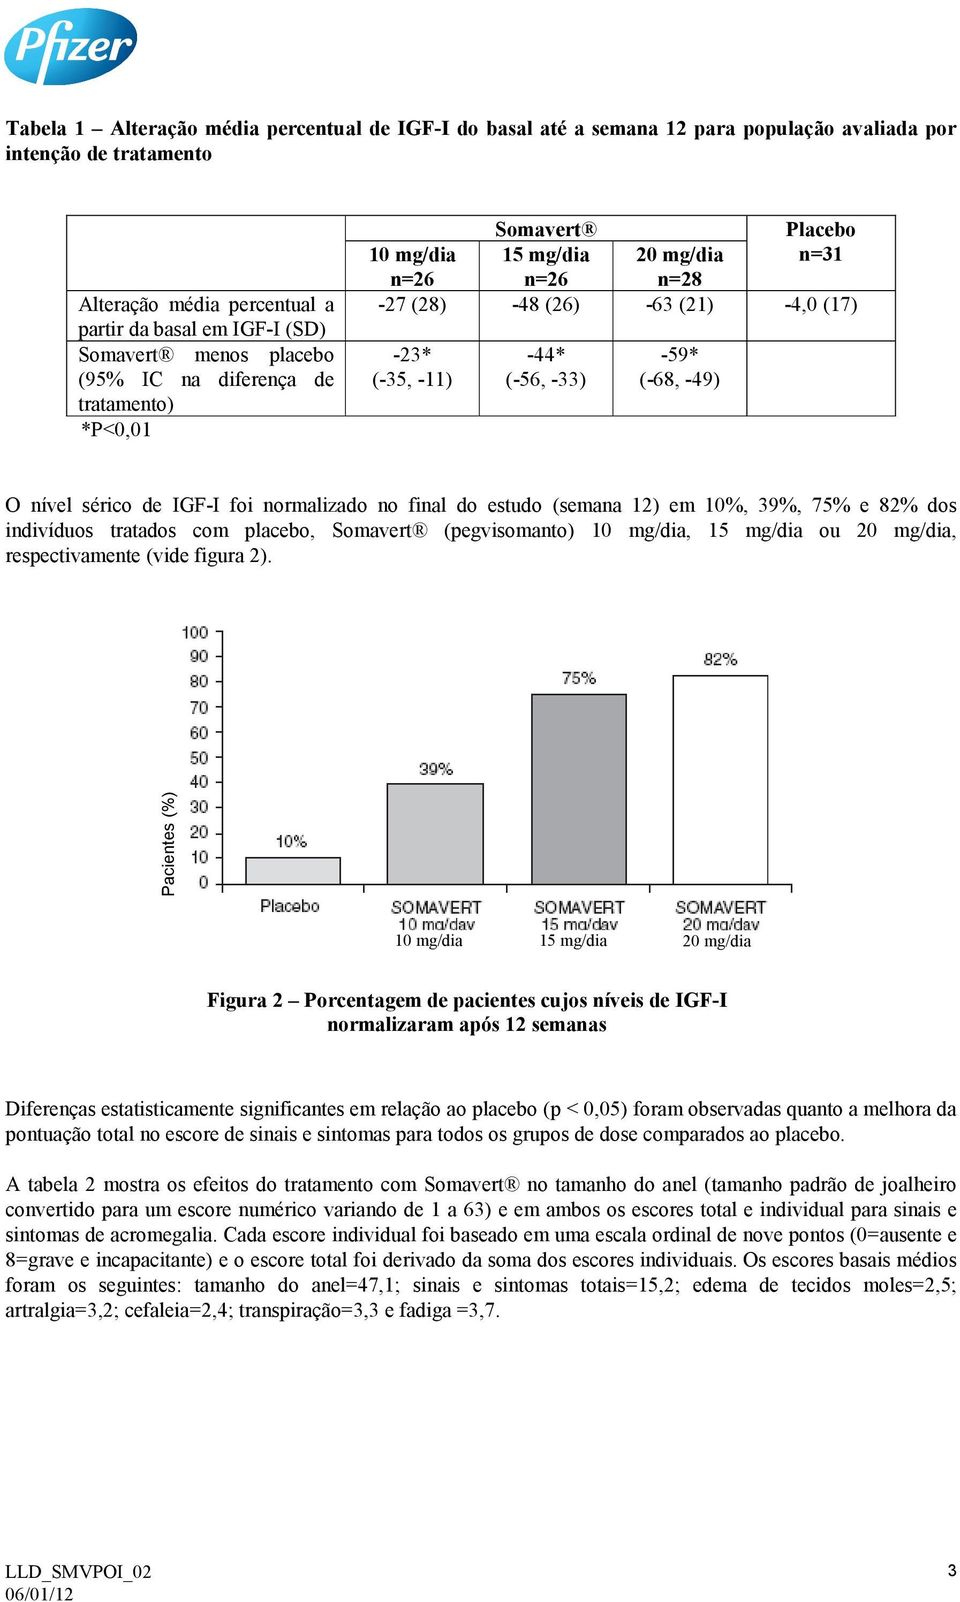 -49) O nível sérico de IGF-I foi normalizado no final do estudo (semana 12) em 10%, 39%, 75% e 82% dos indivíduos tratados com placebo, Somavert (pegvisomanto) 10 mg/dia, 15 mg/dia ou 20 mg/dia,